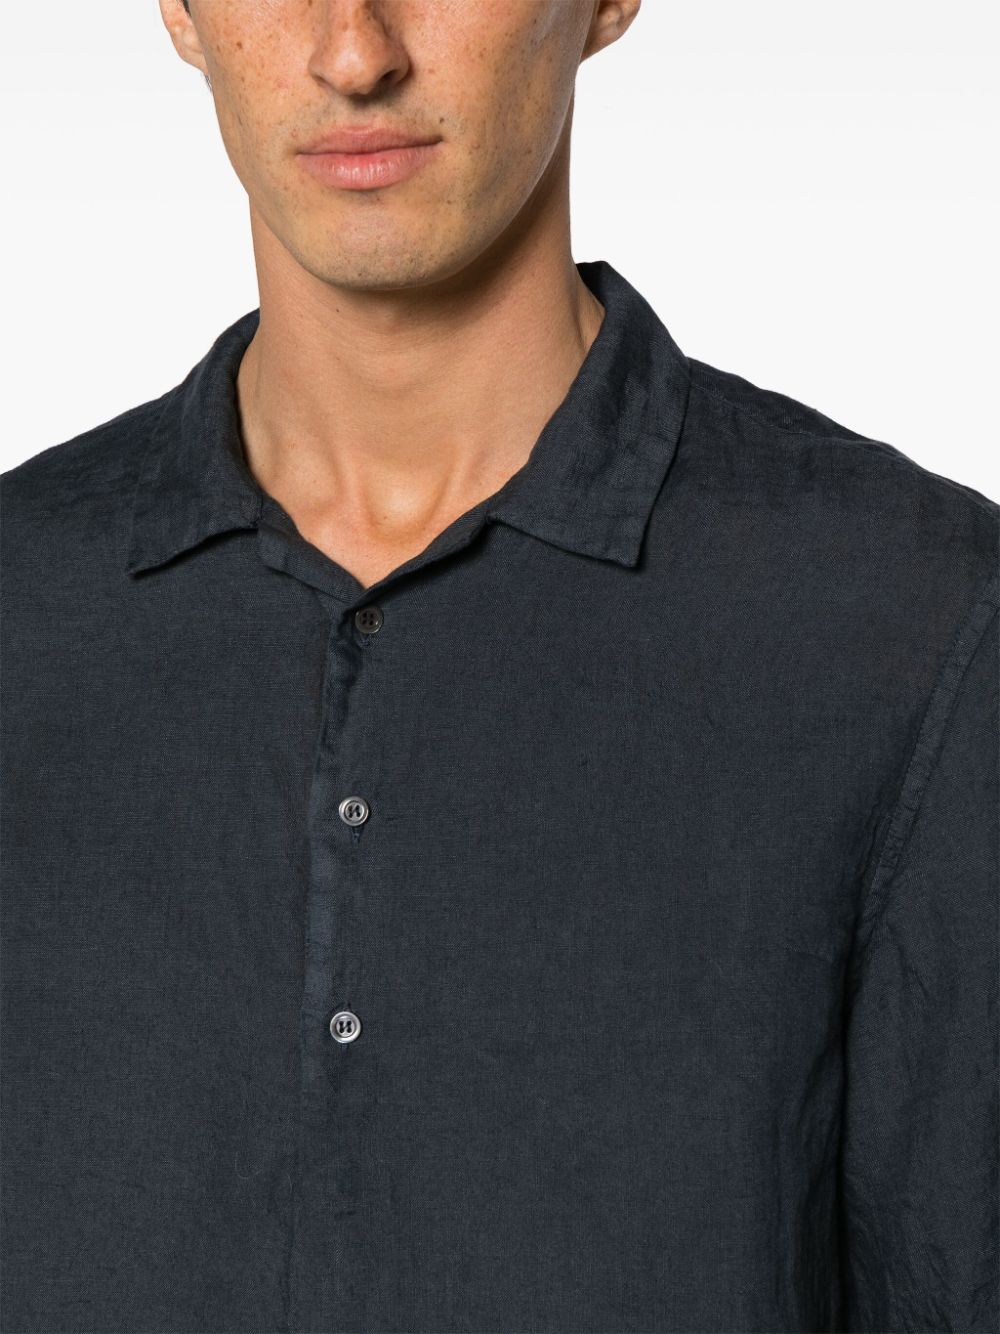 Mola navy shirt